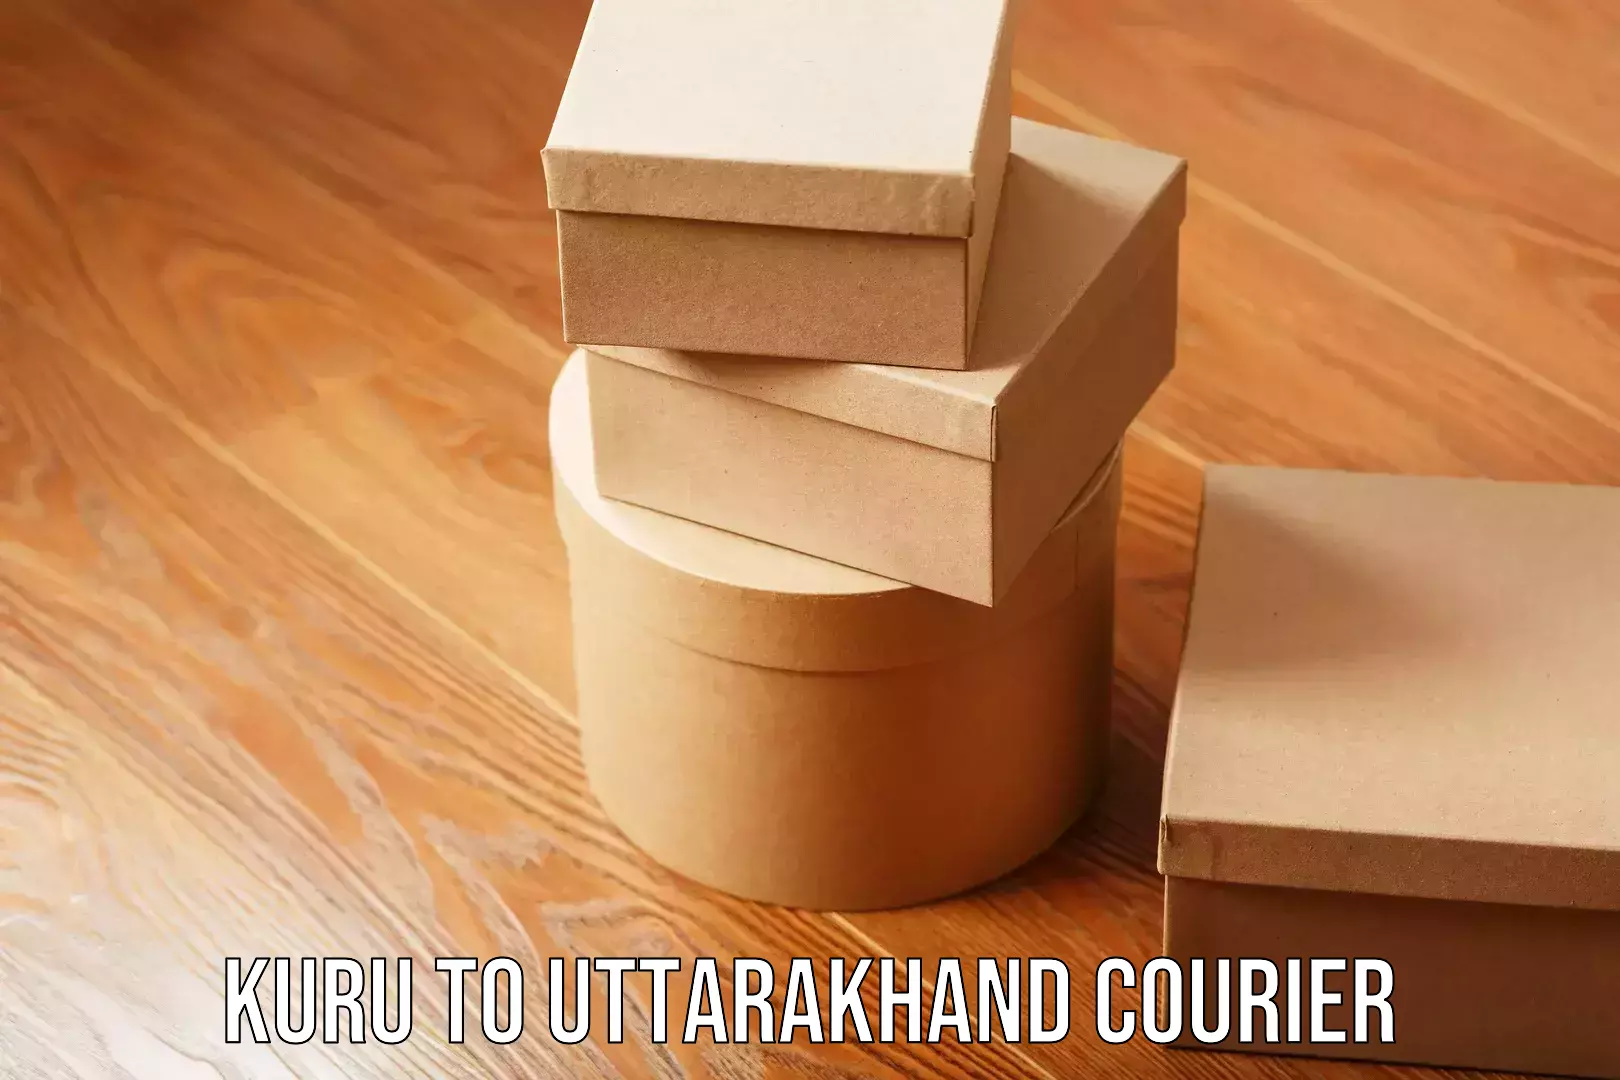 Quick household moving Kuru to Uttarakhand